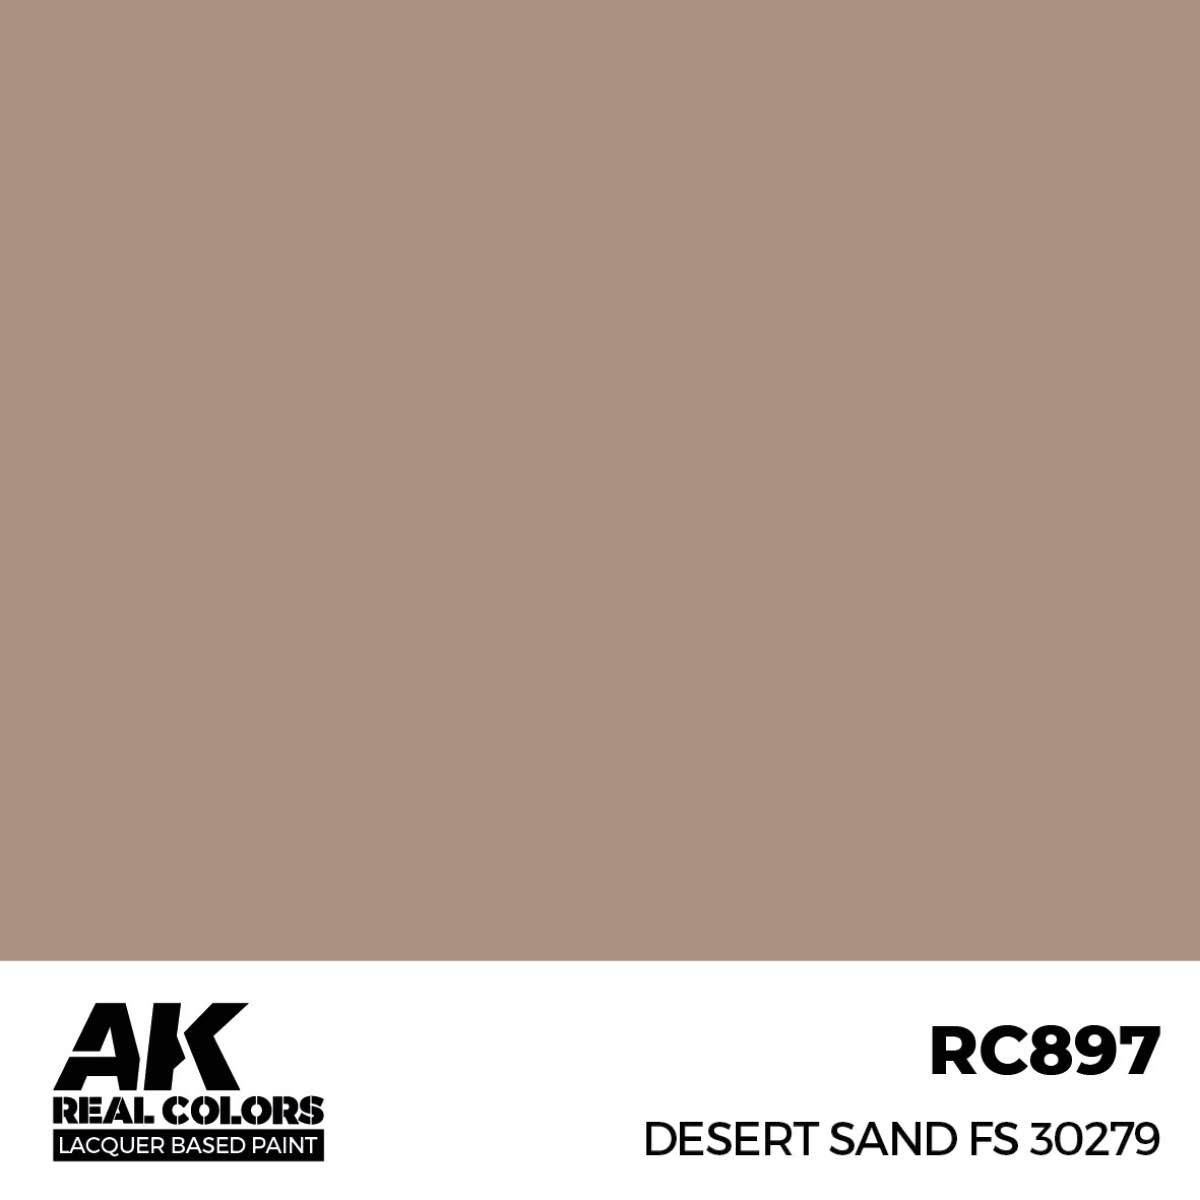 Desert Sand FS 30279